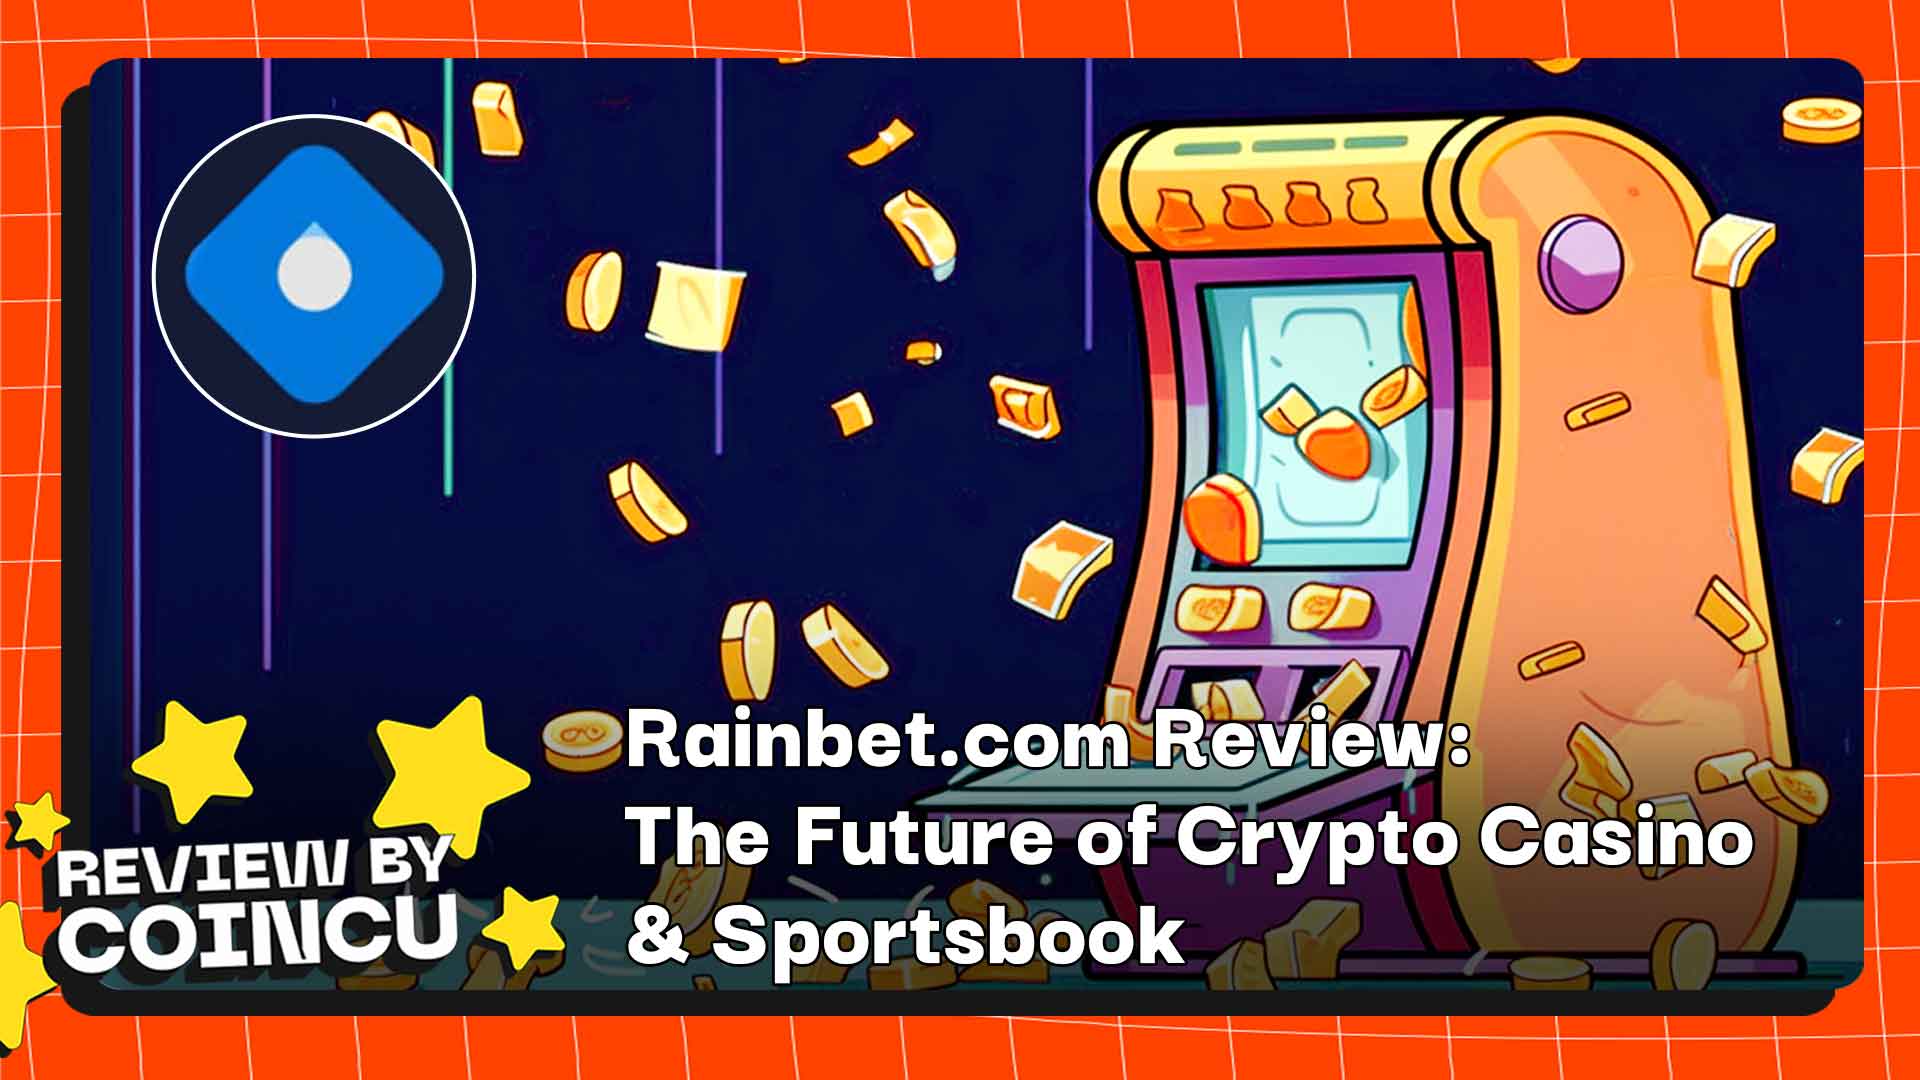 Rainbet.com Review: The Future of Crypto Casino & Sportsbook